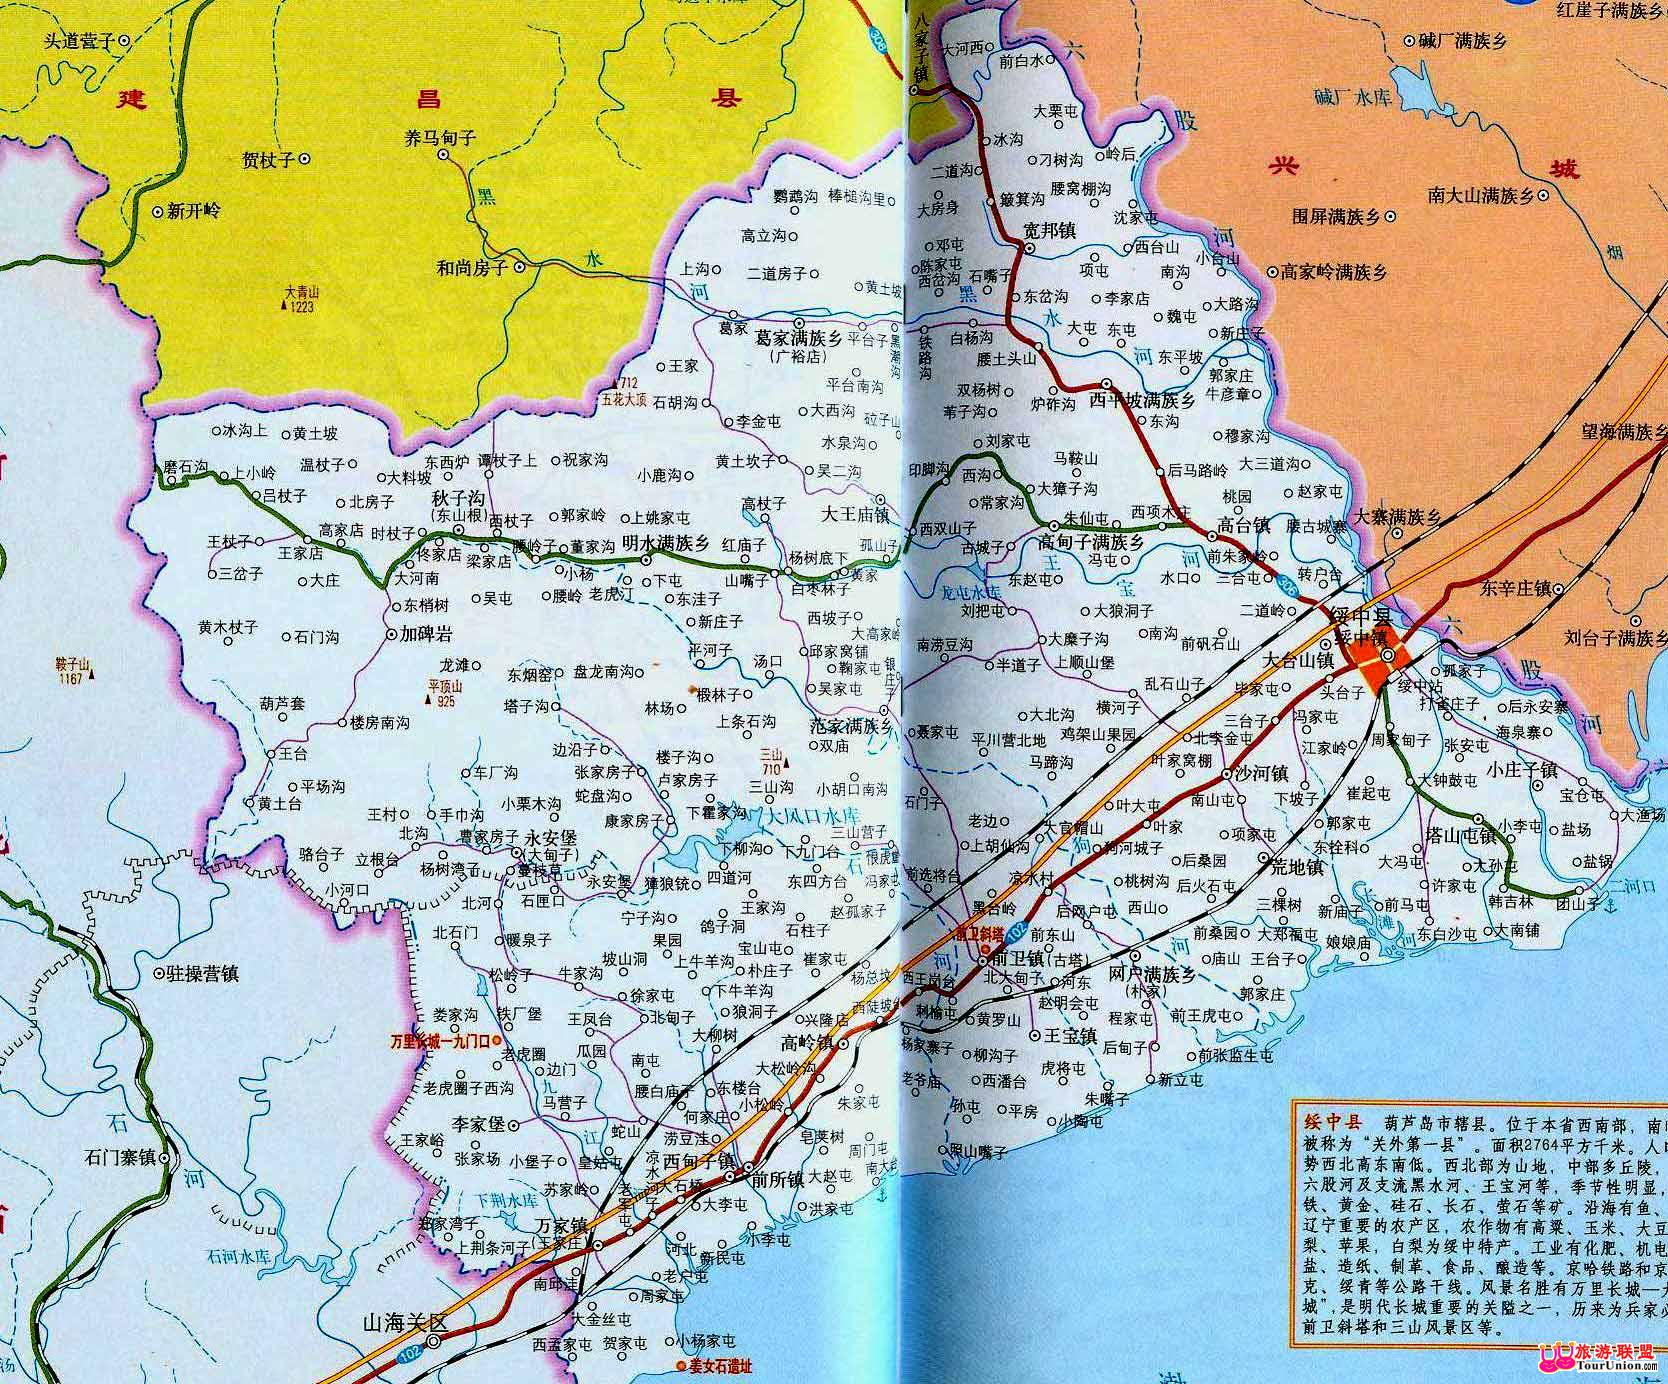 绥中地图|绥中地图全图高清版大图片|旅途风景图片网|www.visacits.com